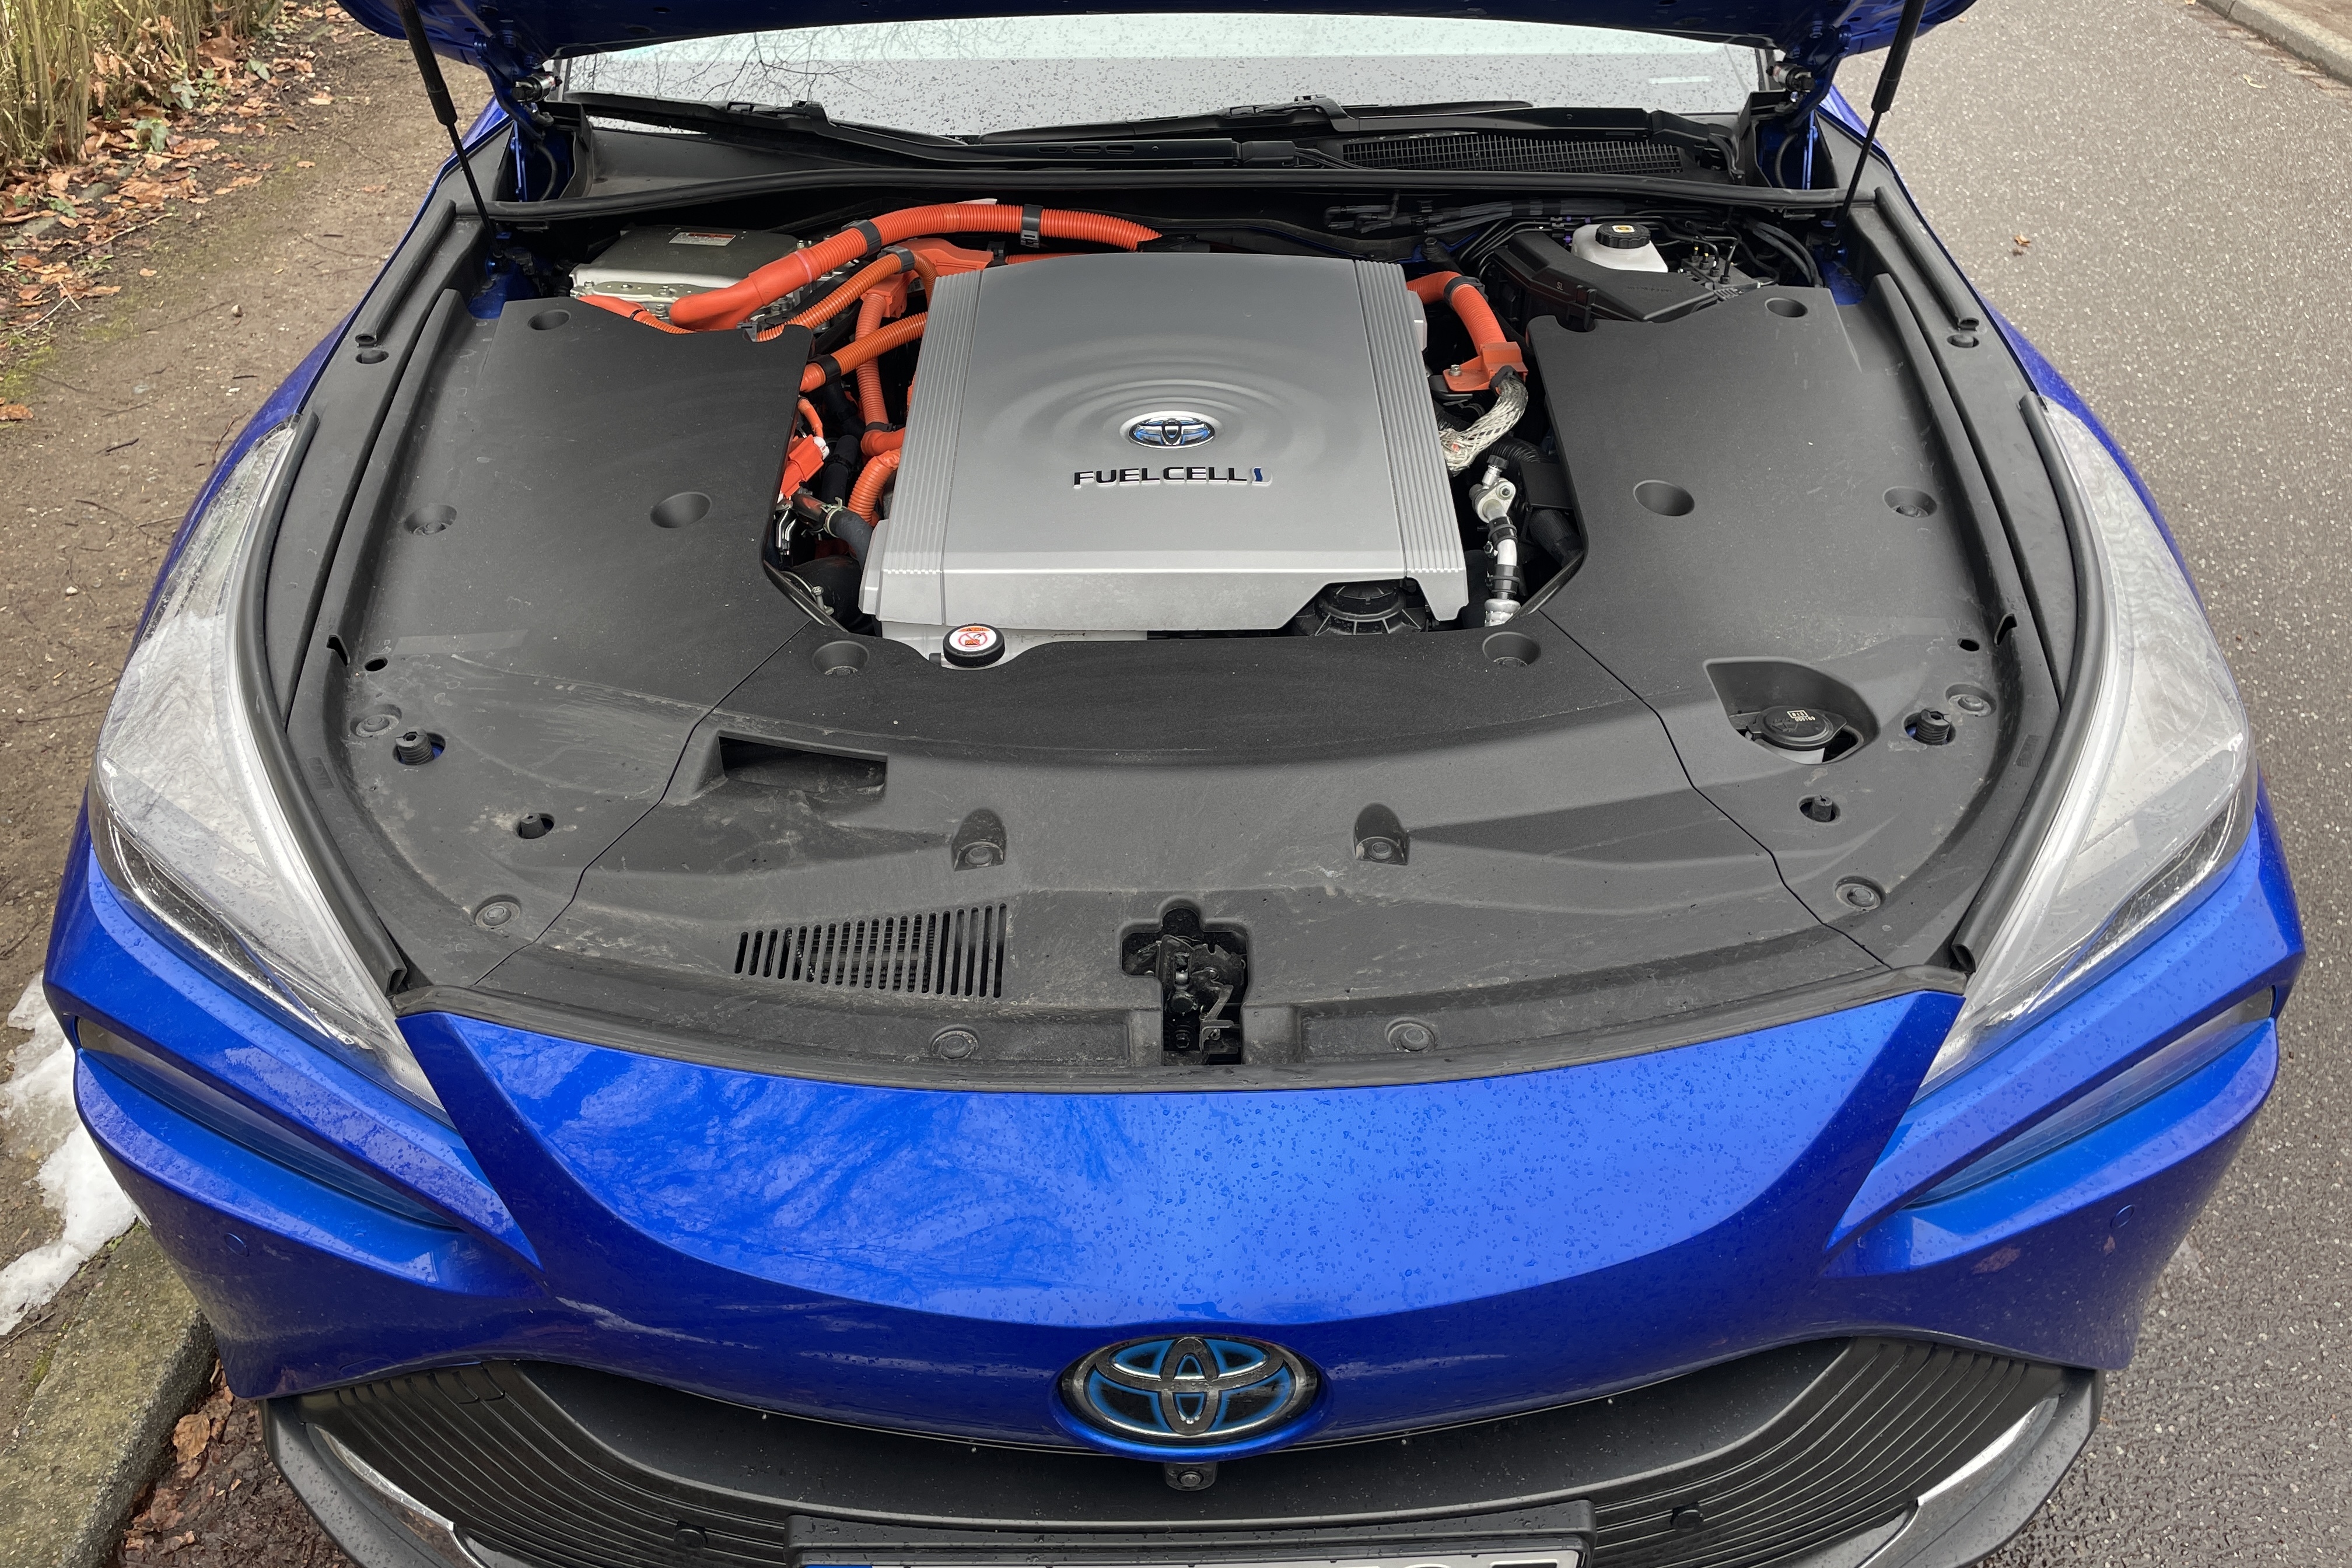 Wasserstoff-Auto kaufen: Wann kommen bezahlbare H2-Autos? - AUTO BILD